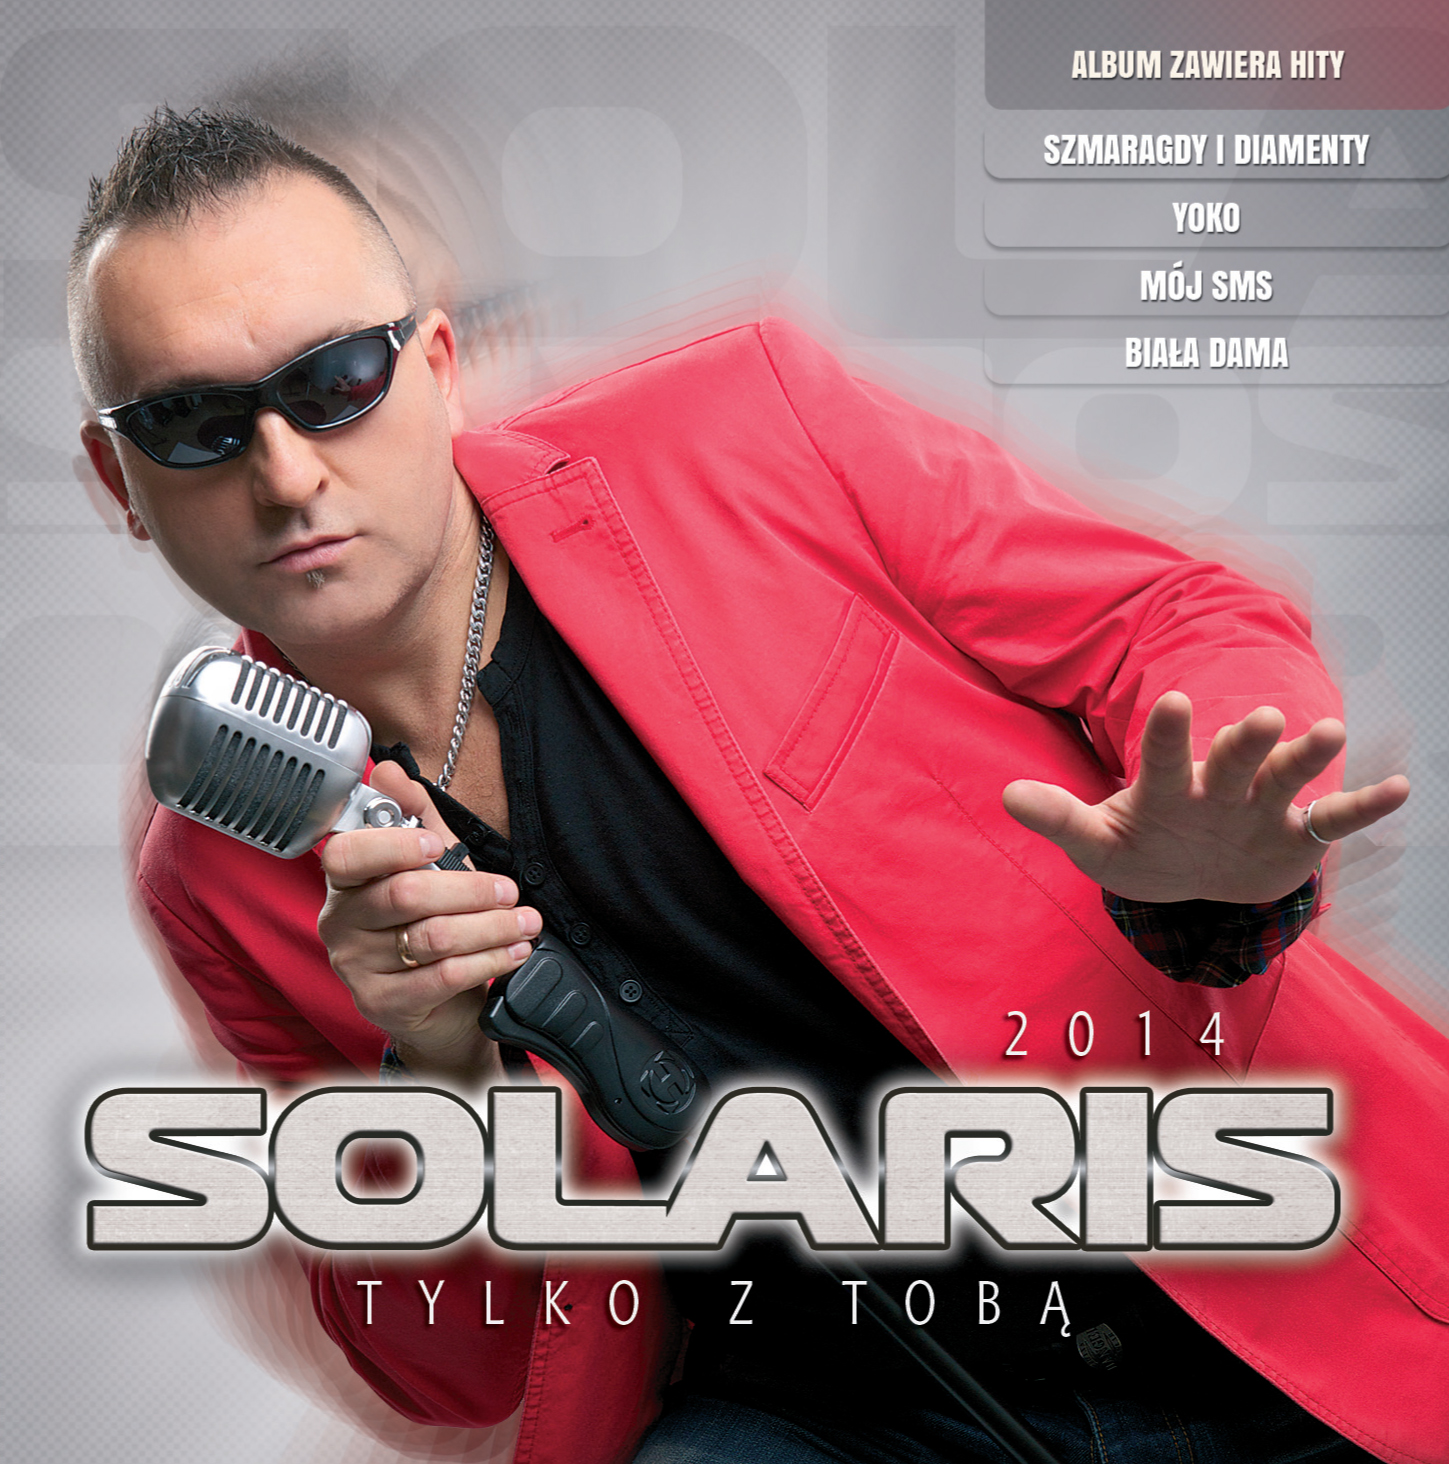 Solaris - Aniol w Moich Snach